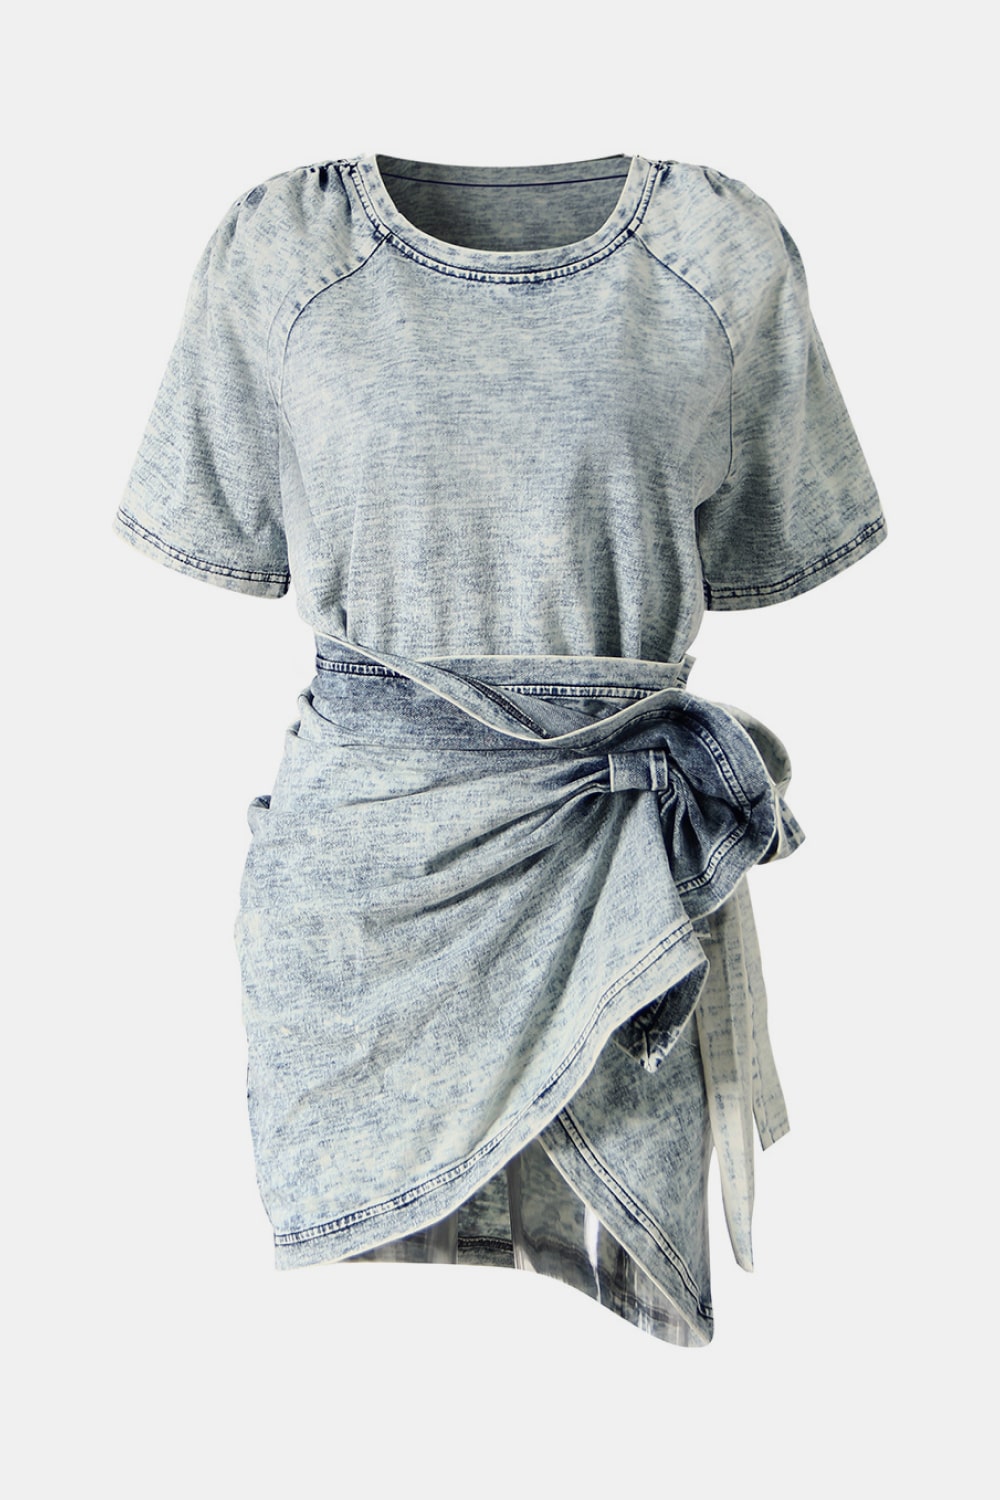 Acid Wash Denim T-Shirt and Side Tie Skirt Set